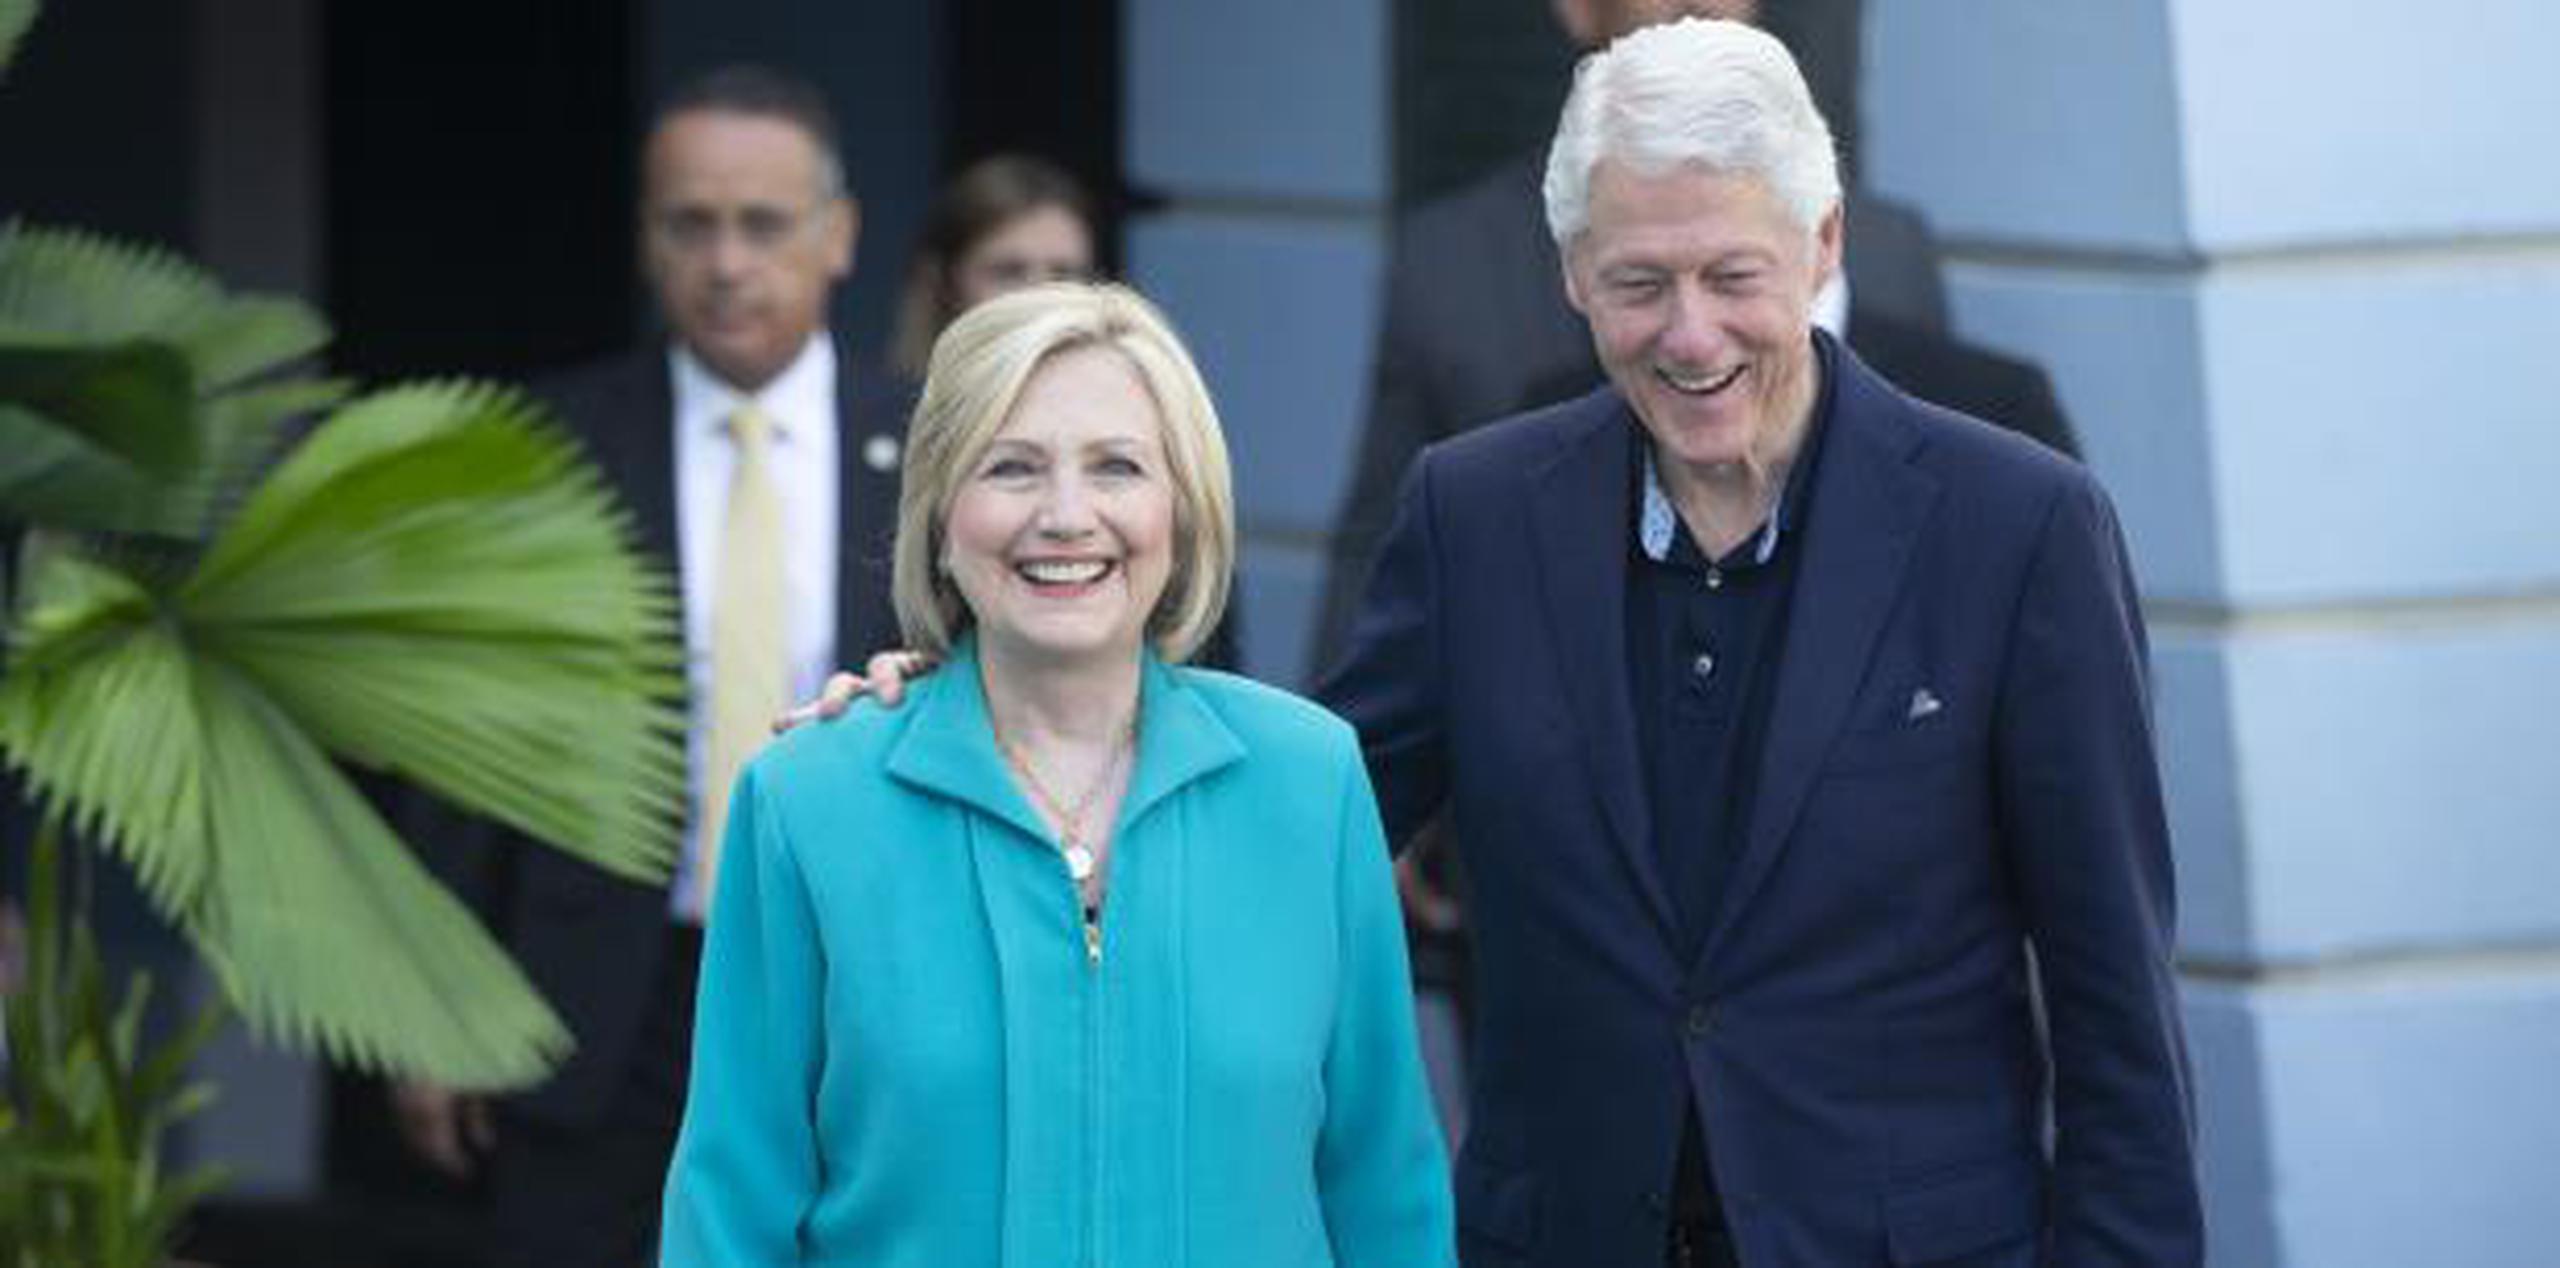 Durante su estadía en la Isla, los Clinton no tendrán actividades políticas con el Partido Demócrata ni de recaudación de fondos. (xavier.araujo@gfrmedia.com)